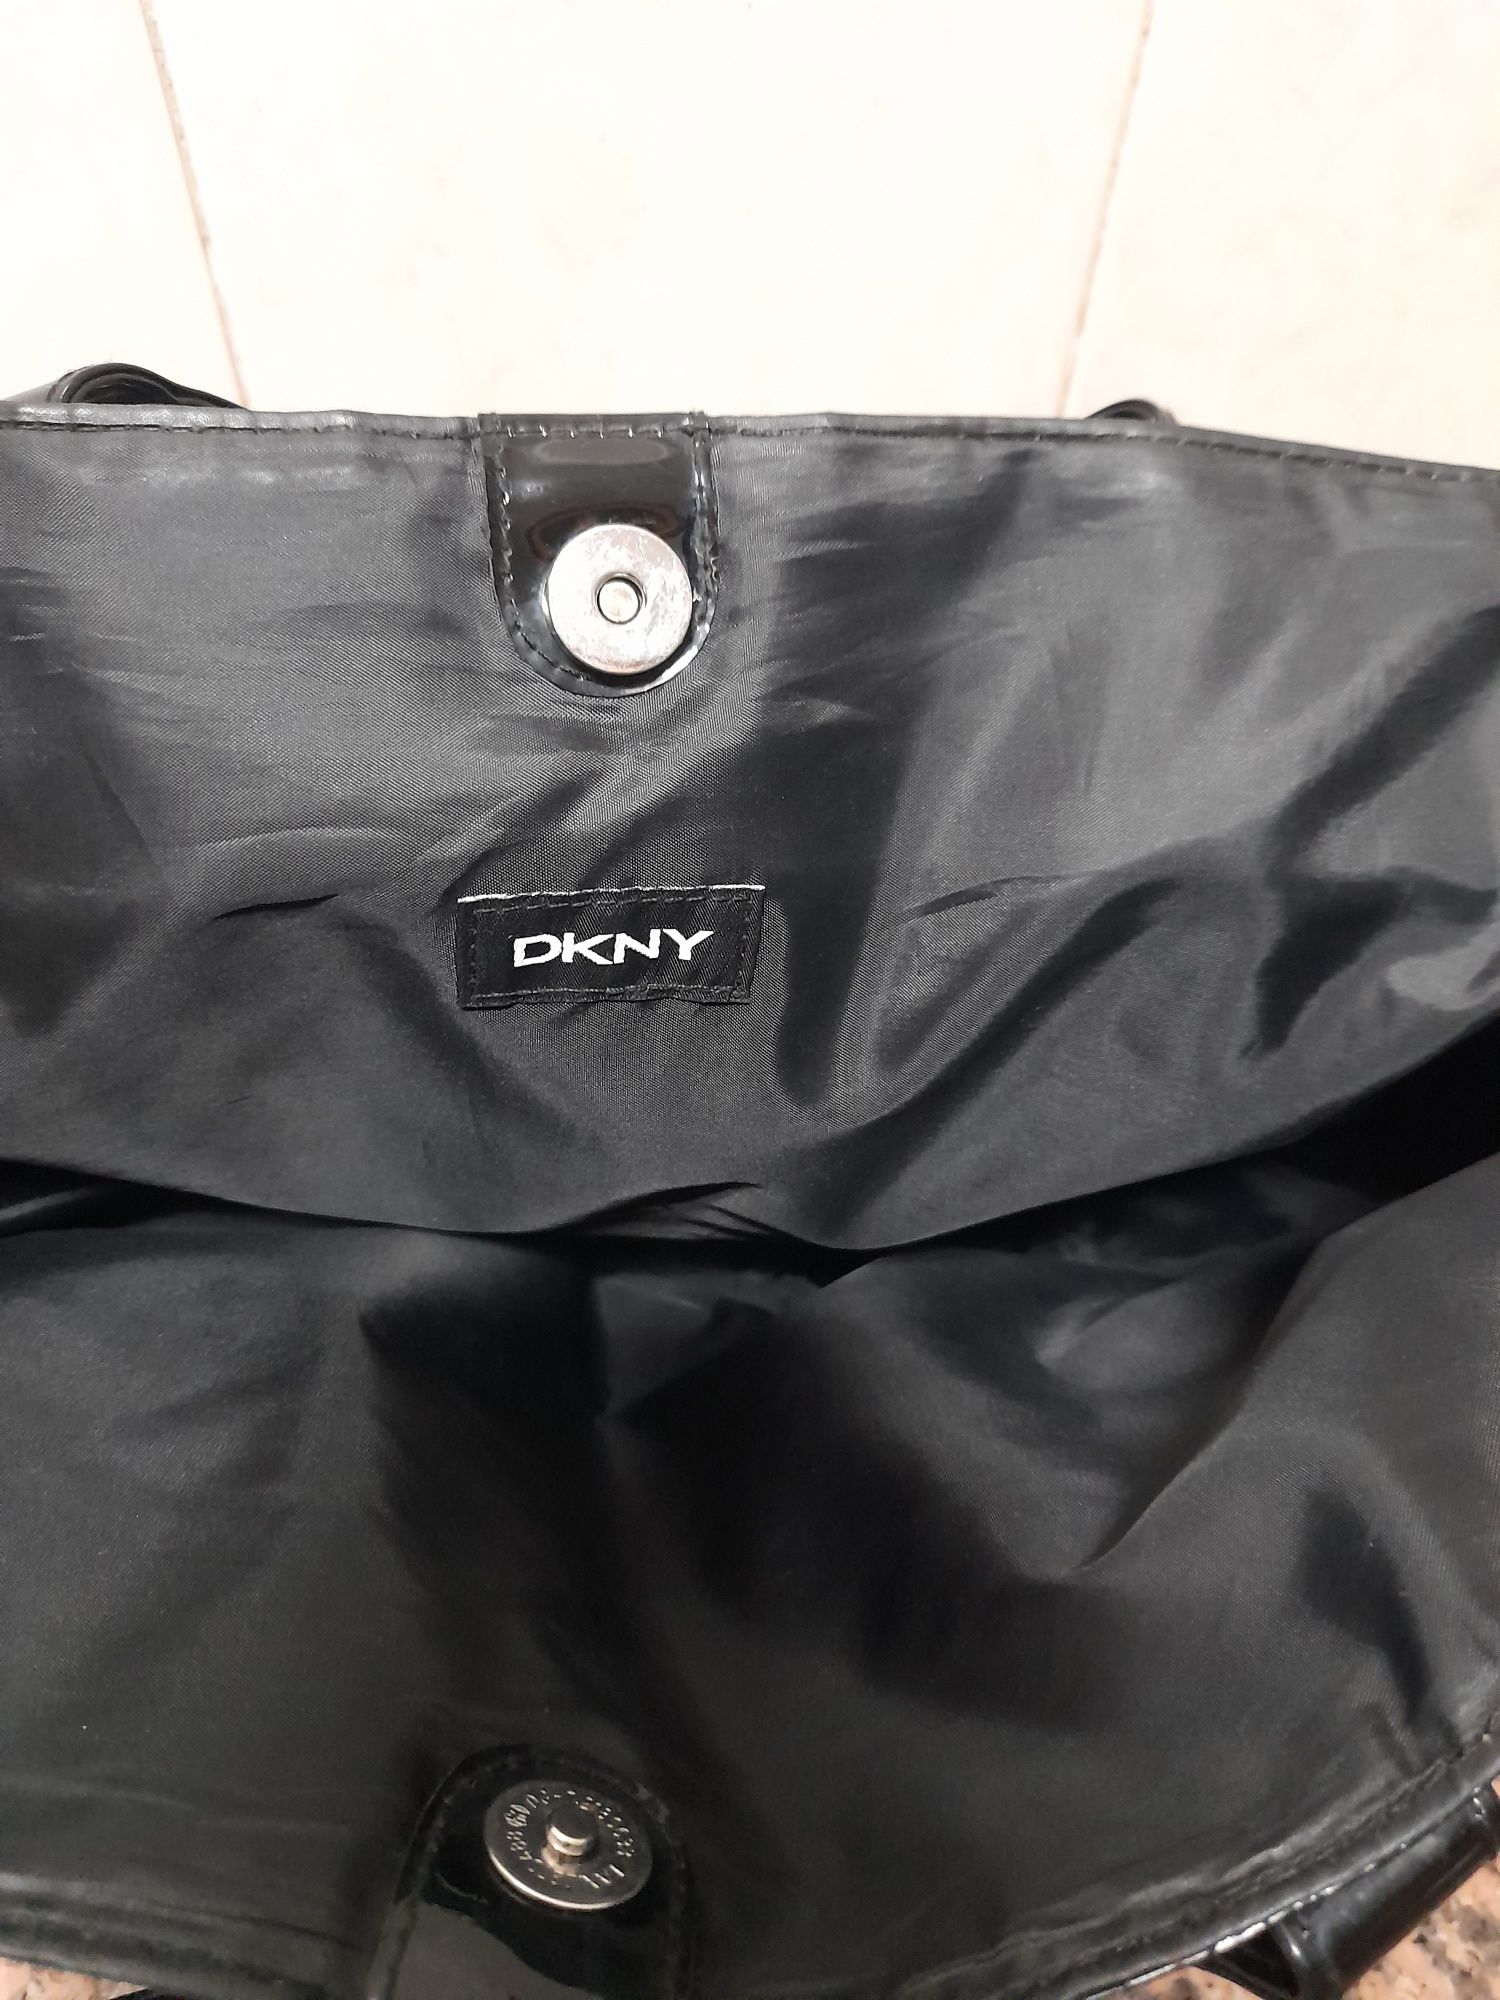 Mala e carteira DKNY em plástico